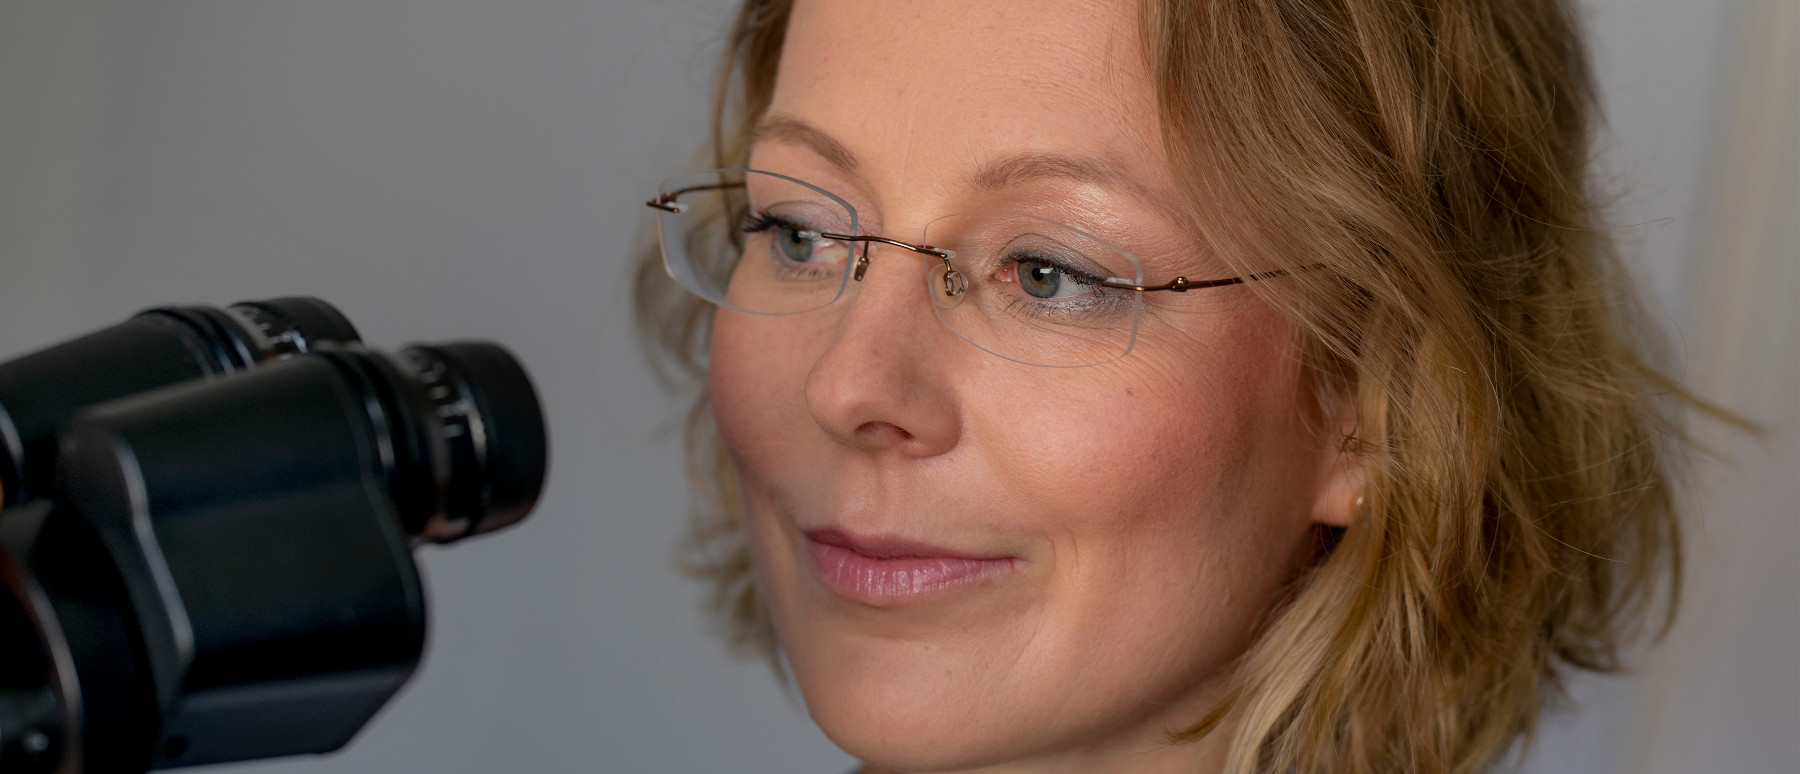 Augenärztin Dr. Cornelia Grunewald untersucht eine Hornhautverkrümmung